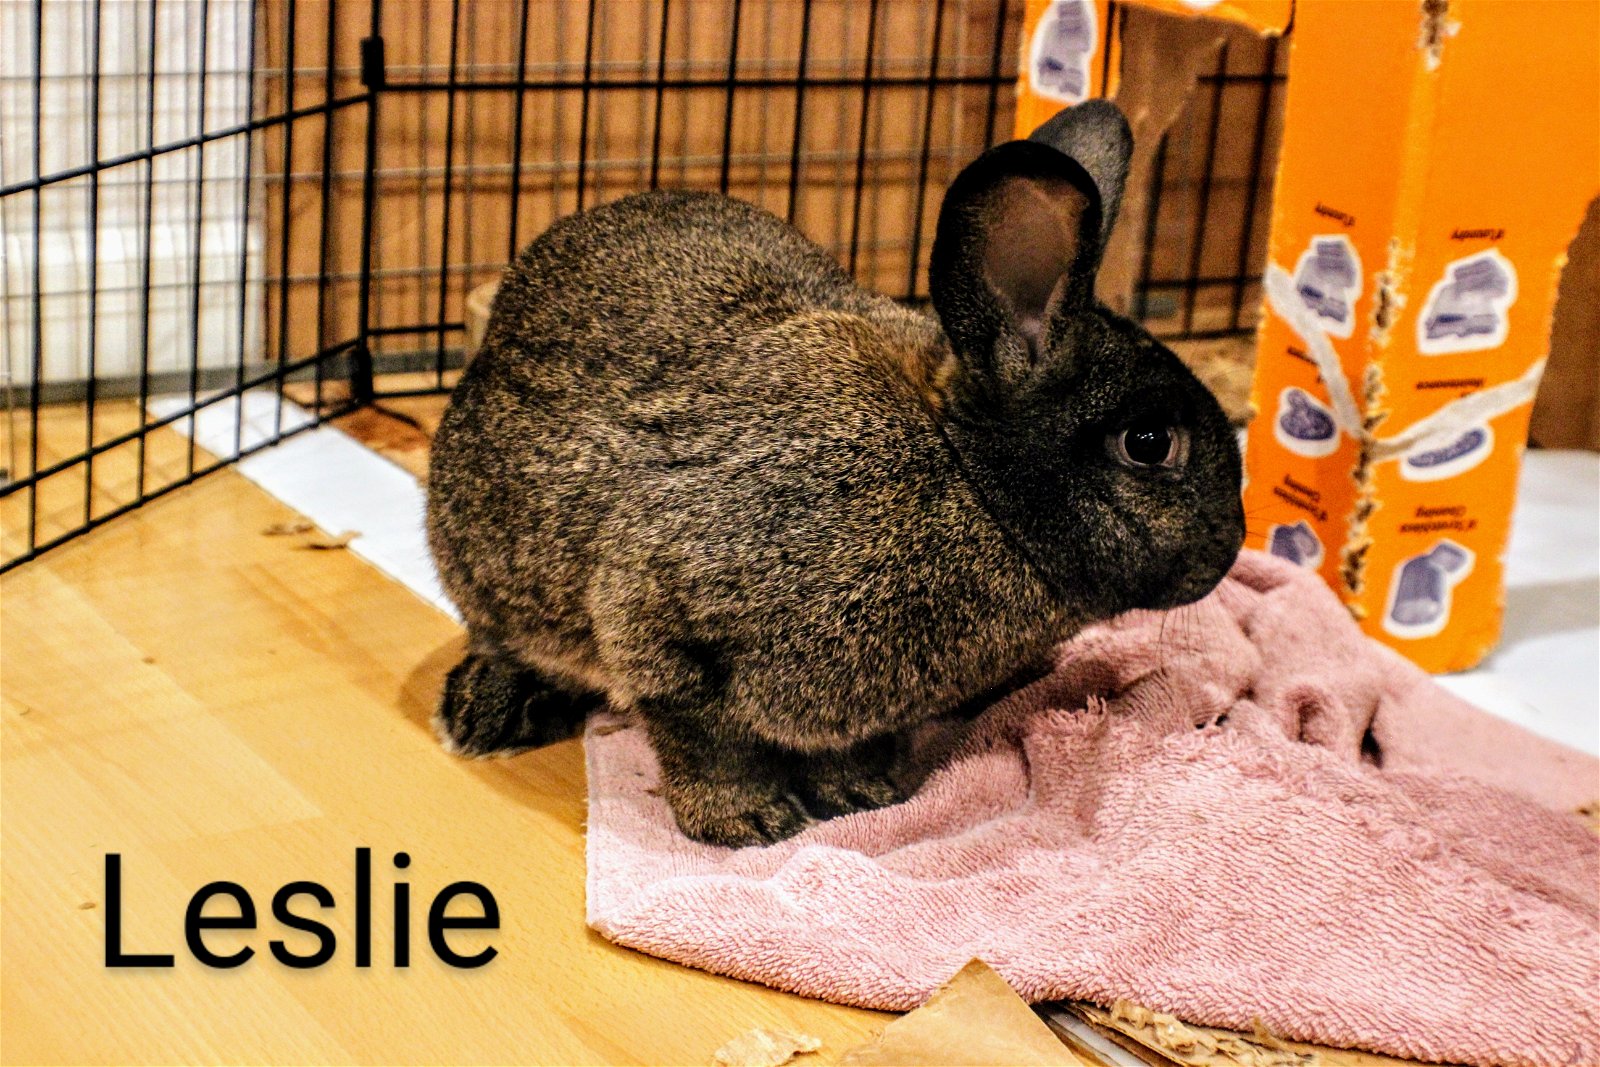 adoptable Rabbit in Beaverton, OR named Leslie